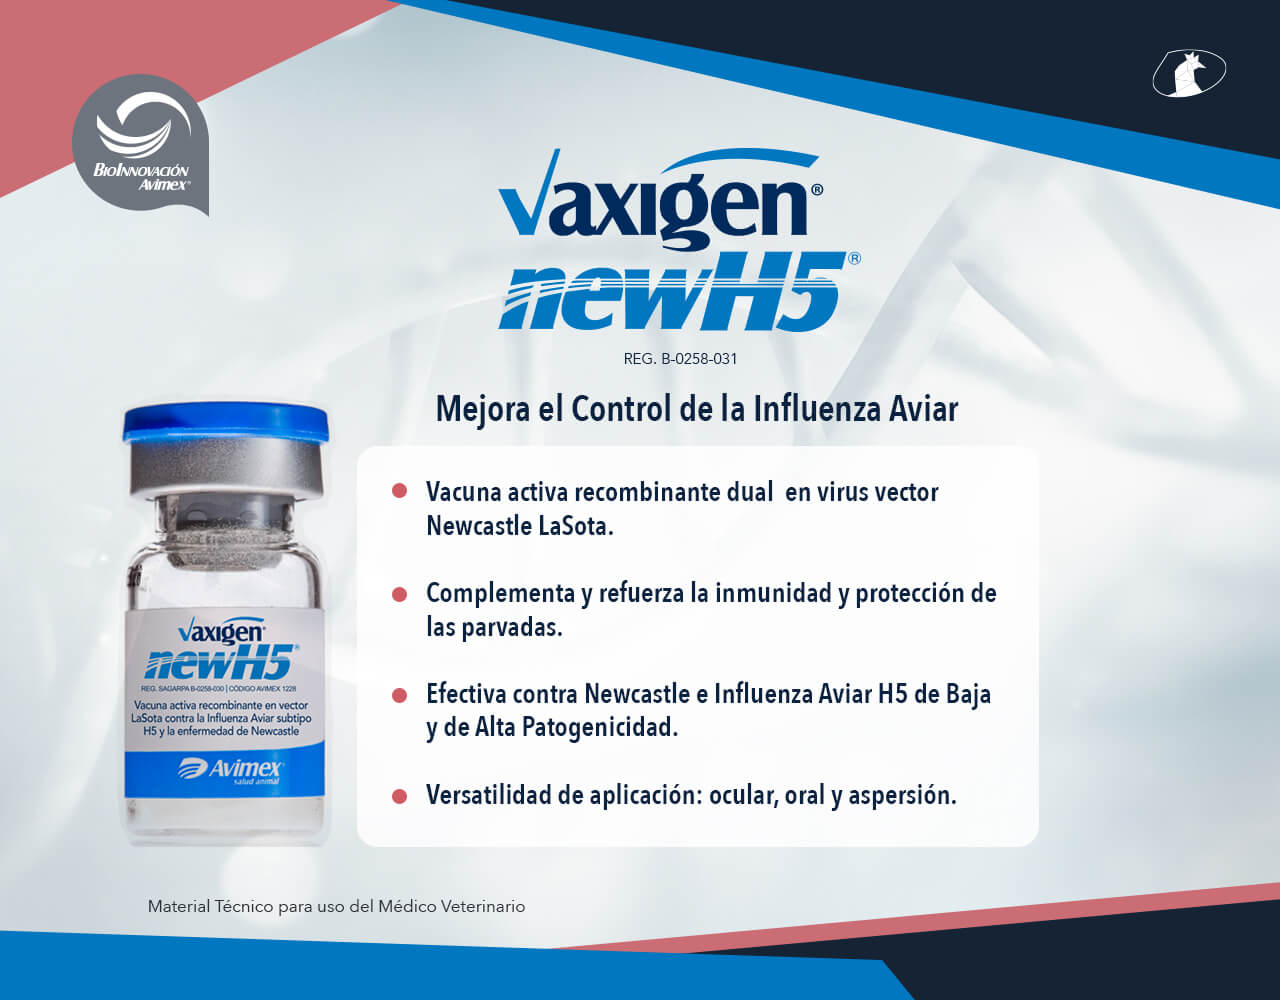 vaxigen® newH5<sup>®</sup>